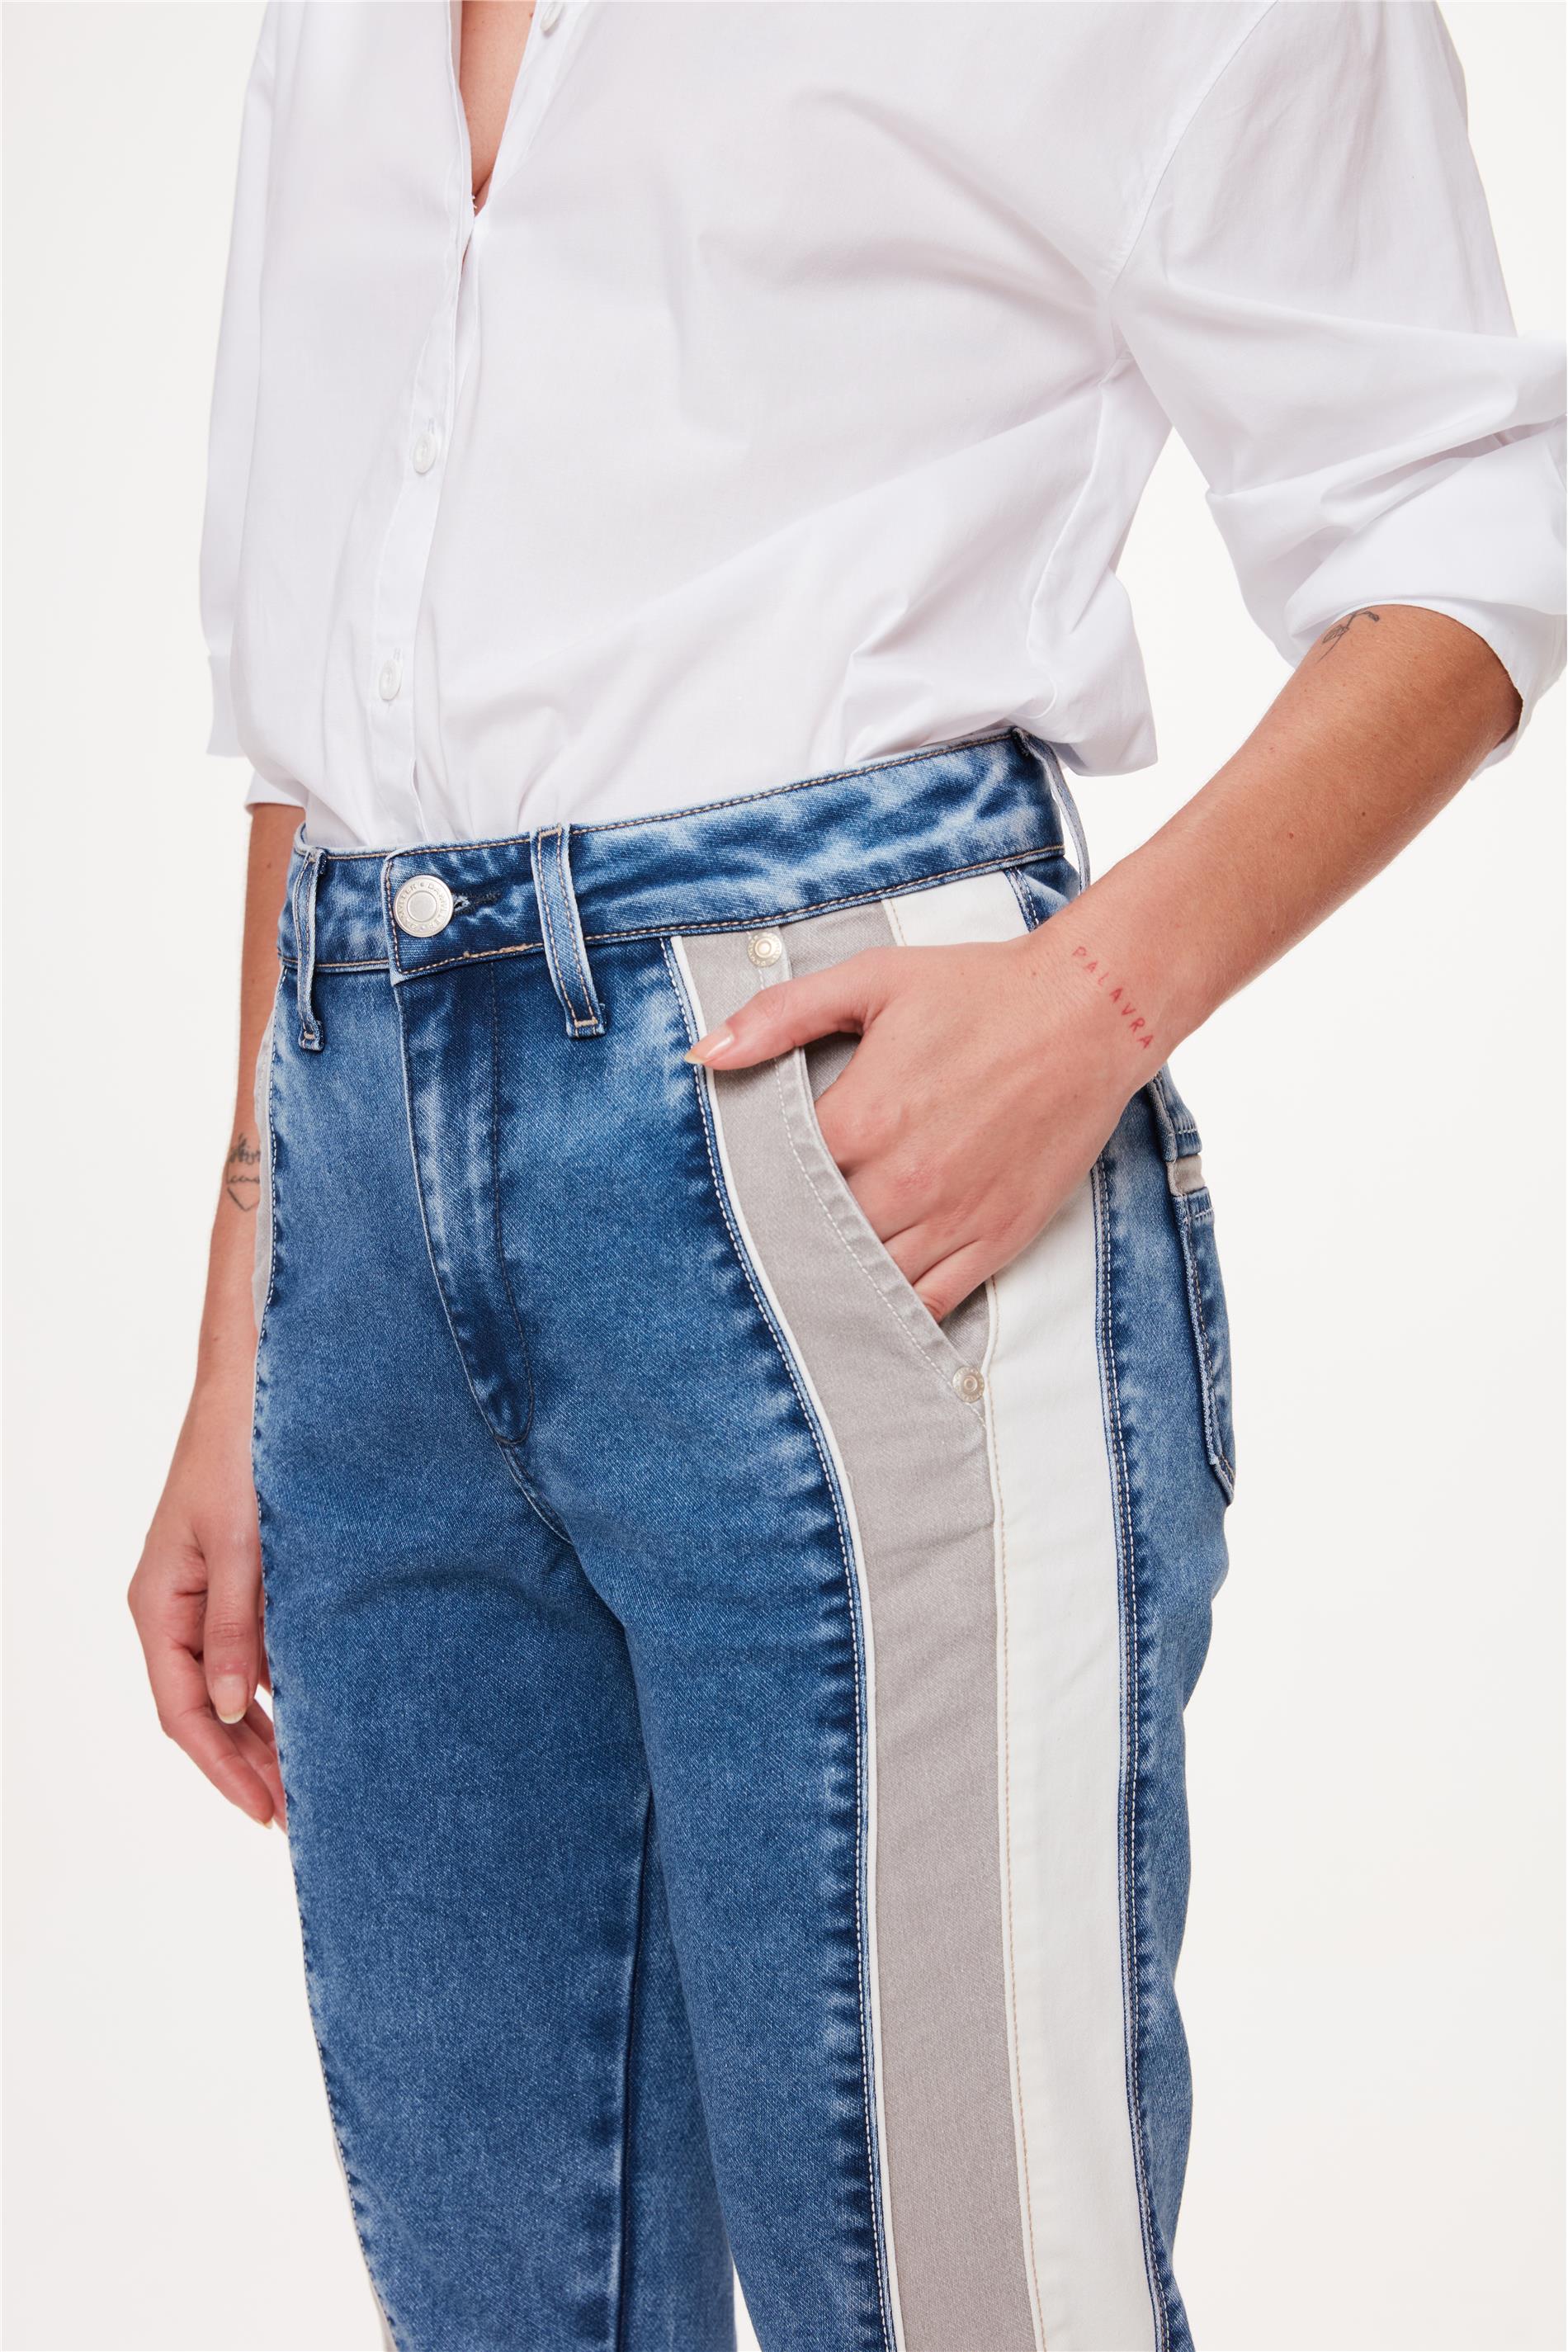 Calça Jeans Masculina Slim com Recortes - Damyller - O Jeans da Vida Real